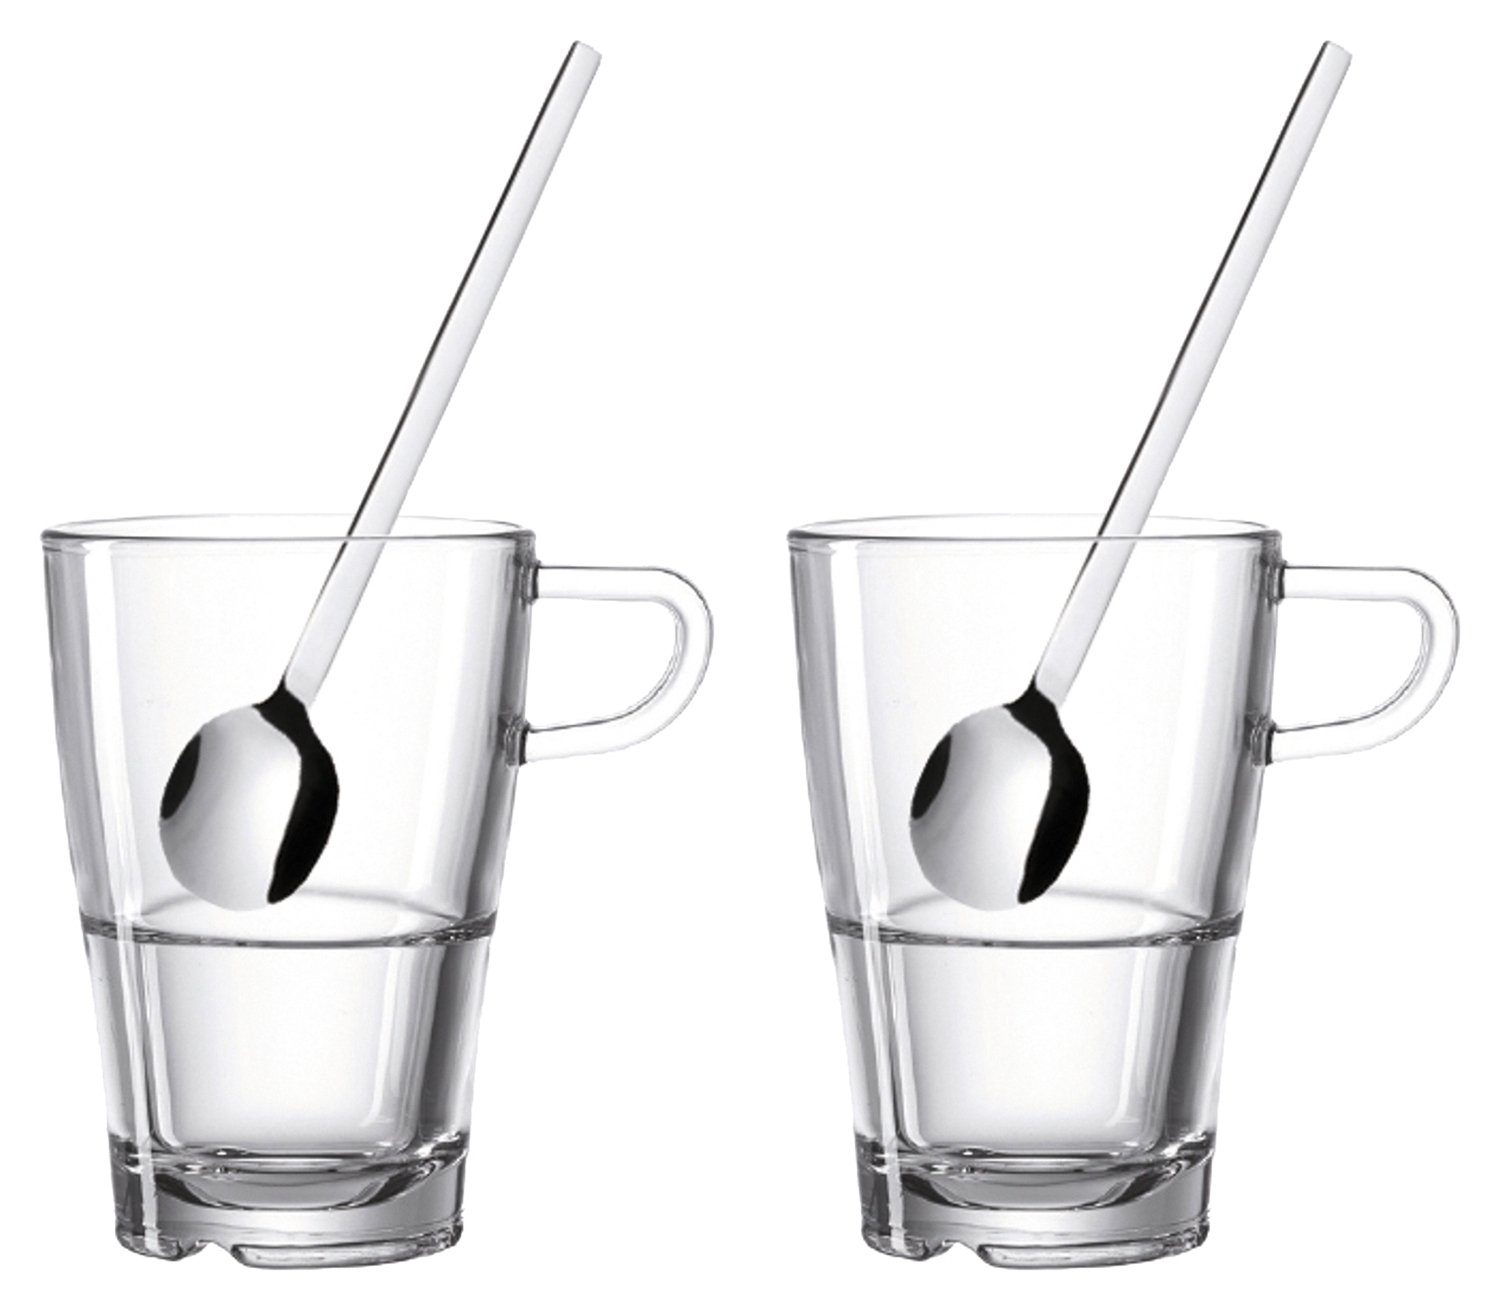 LEONARDO Latte-Macchiato-Glas Geschenk-Set 4tlg. SENSO, Transparent, Ø 8,5 cm, Edelstahl, Glas, mit Henkel und 2 Löffel